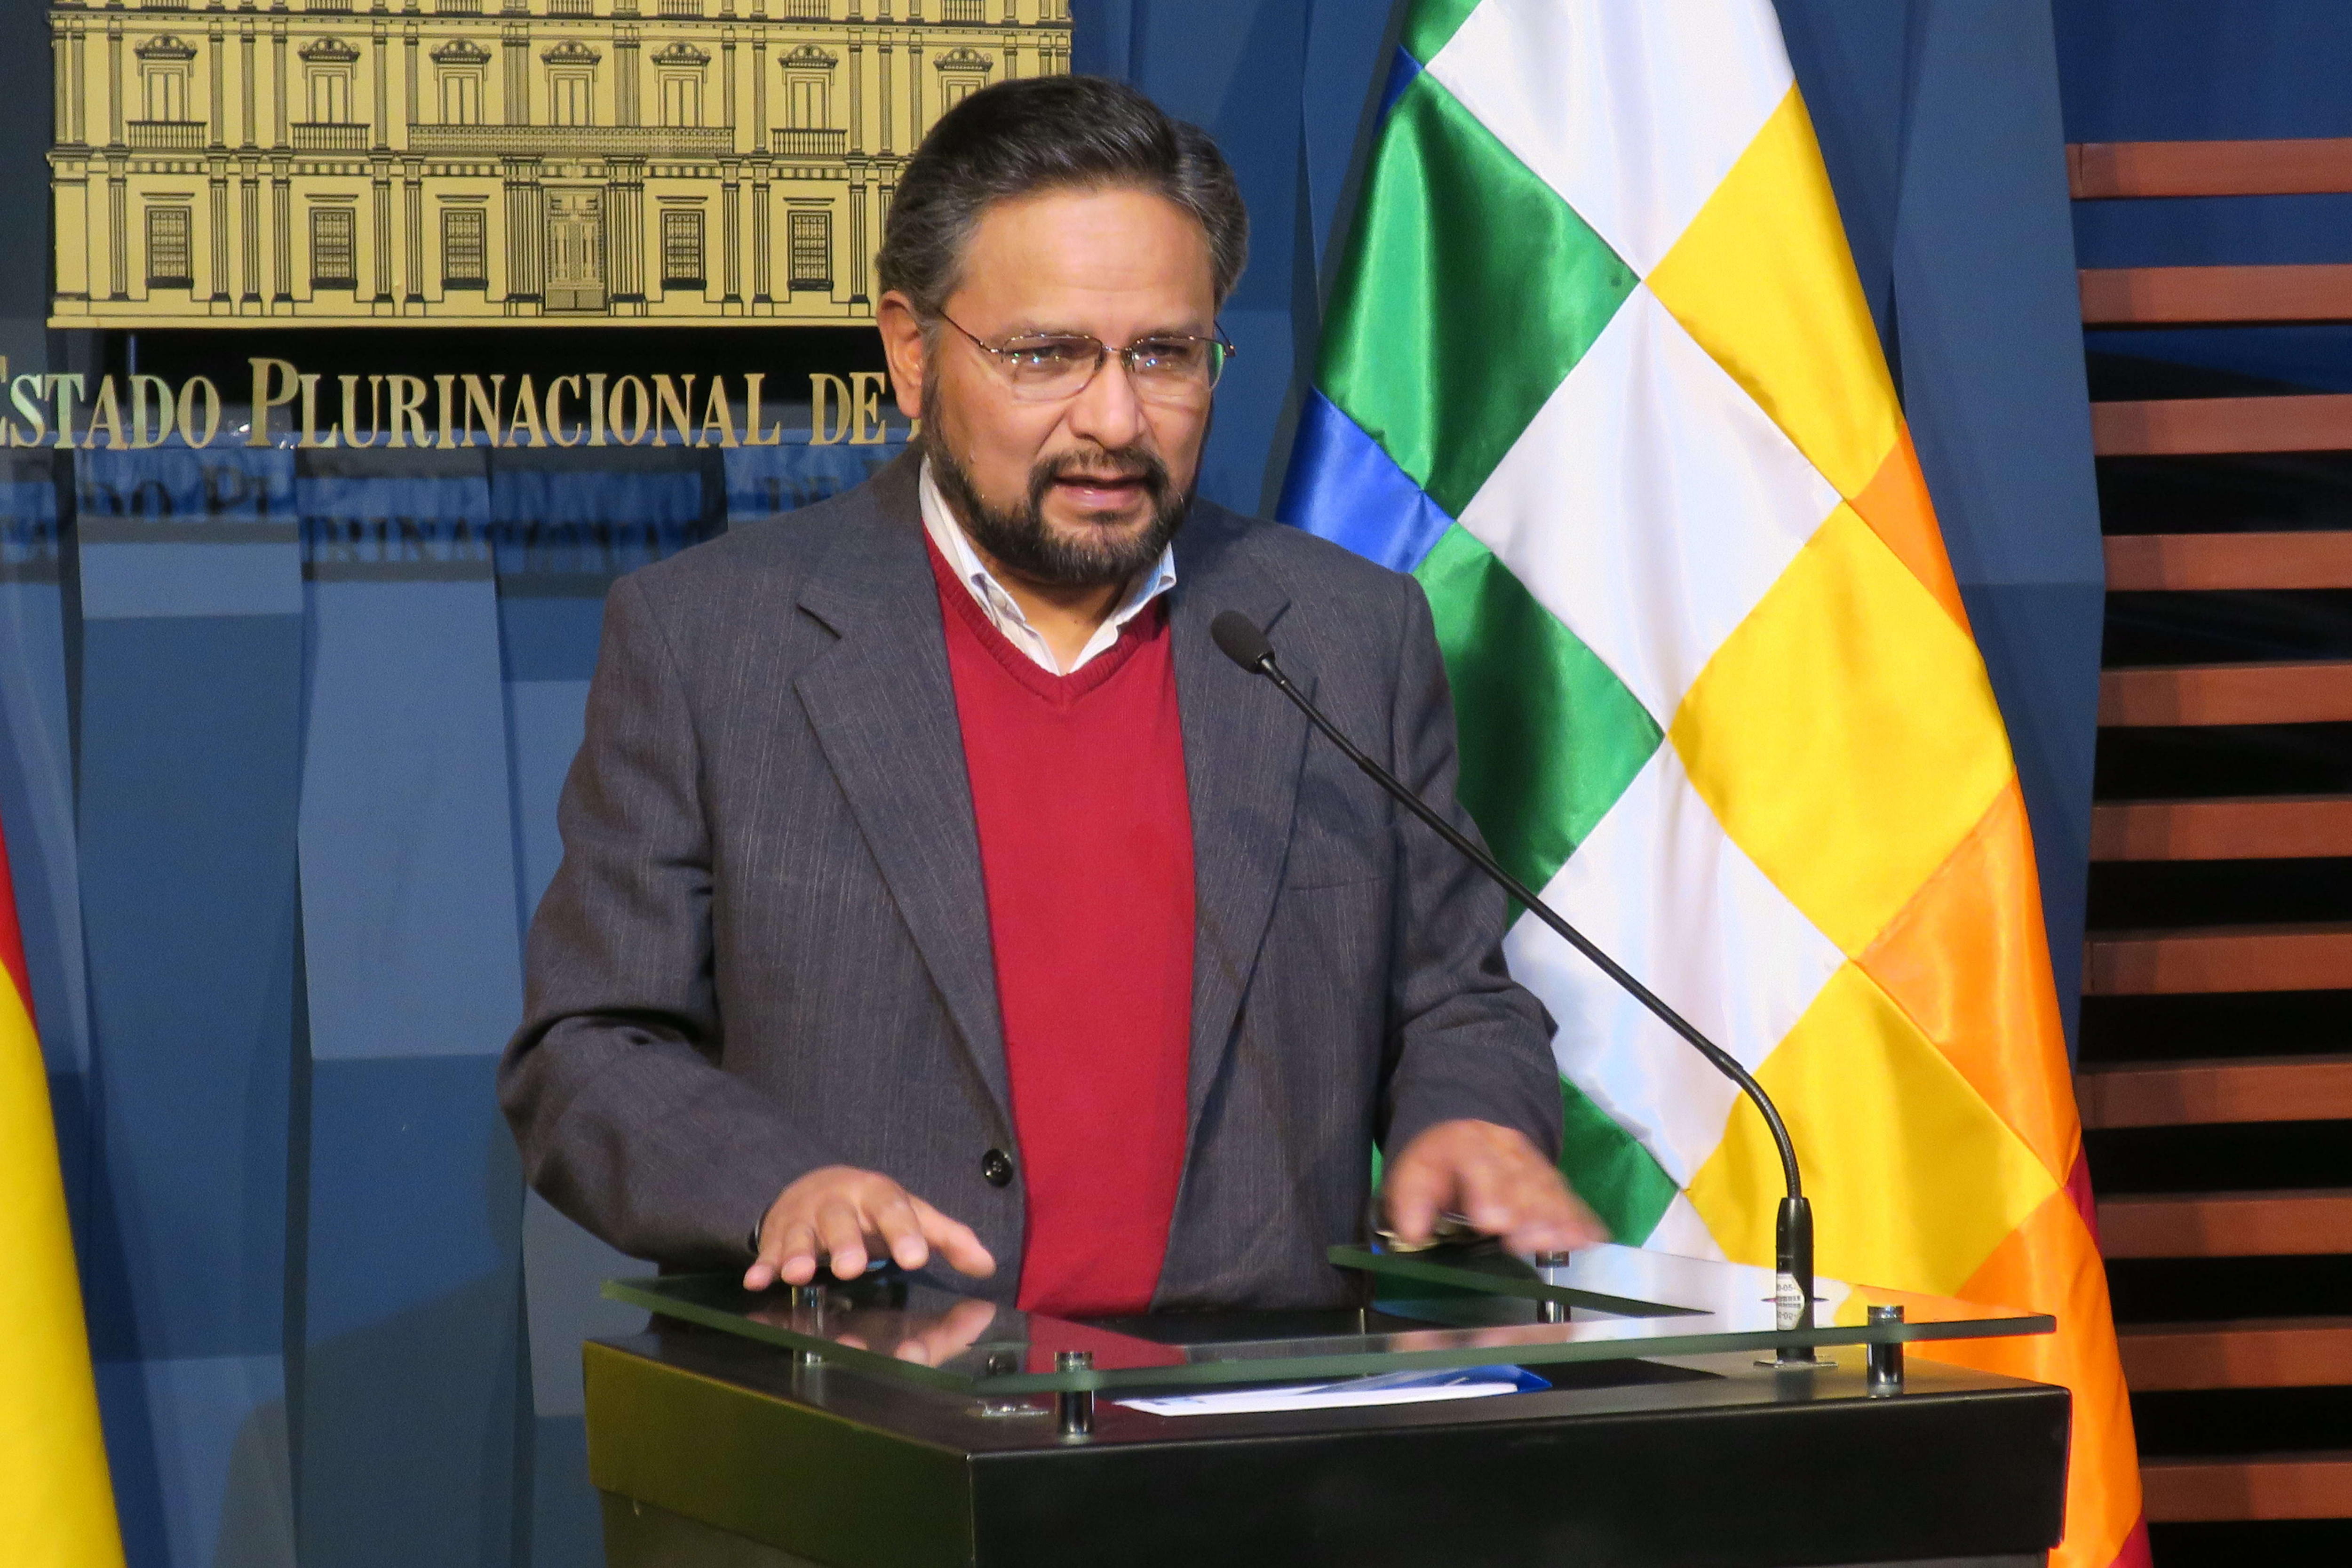 El ministro de la Presidencia dijo que el Ejecutivo boliviano cumple con la oferta realizada en las mesas de diálogo.